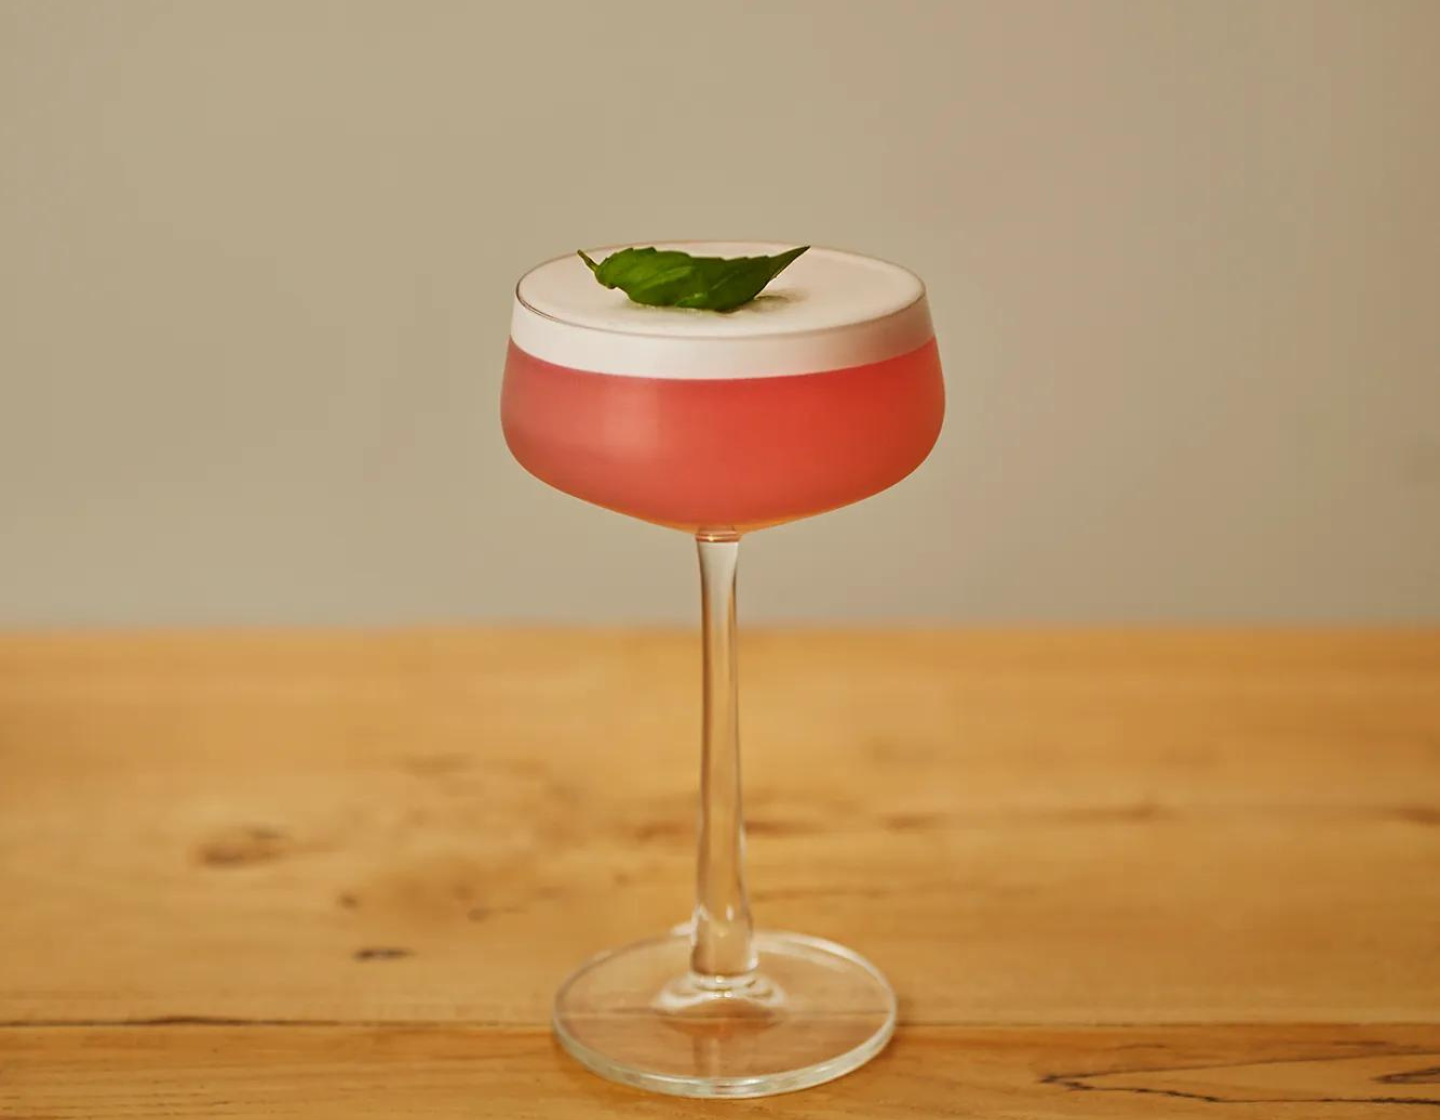 Coctel servido en una copa Martini color rojo